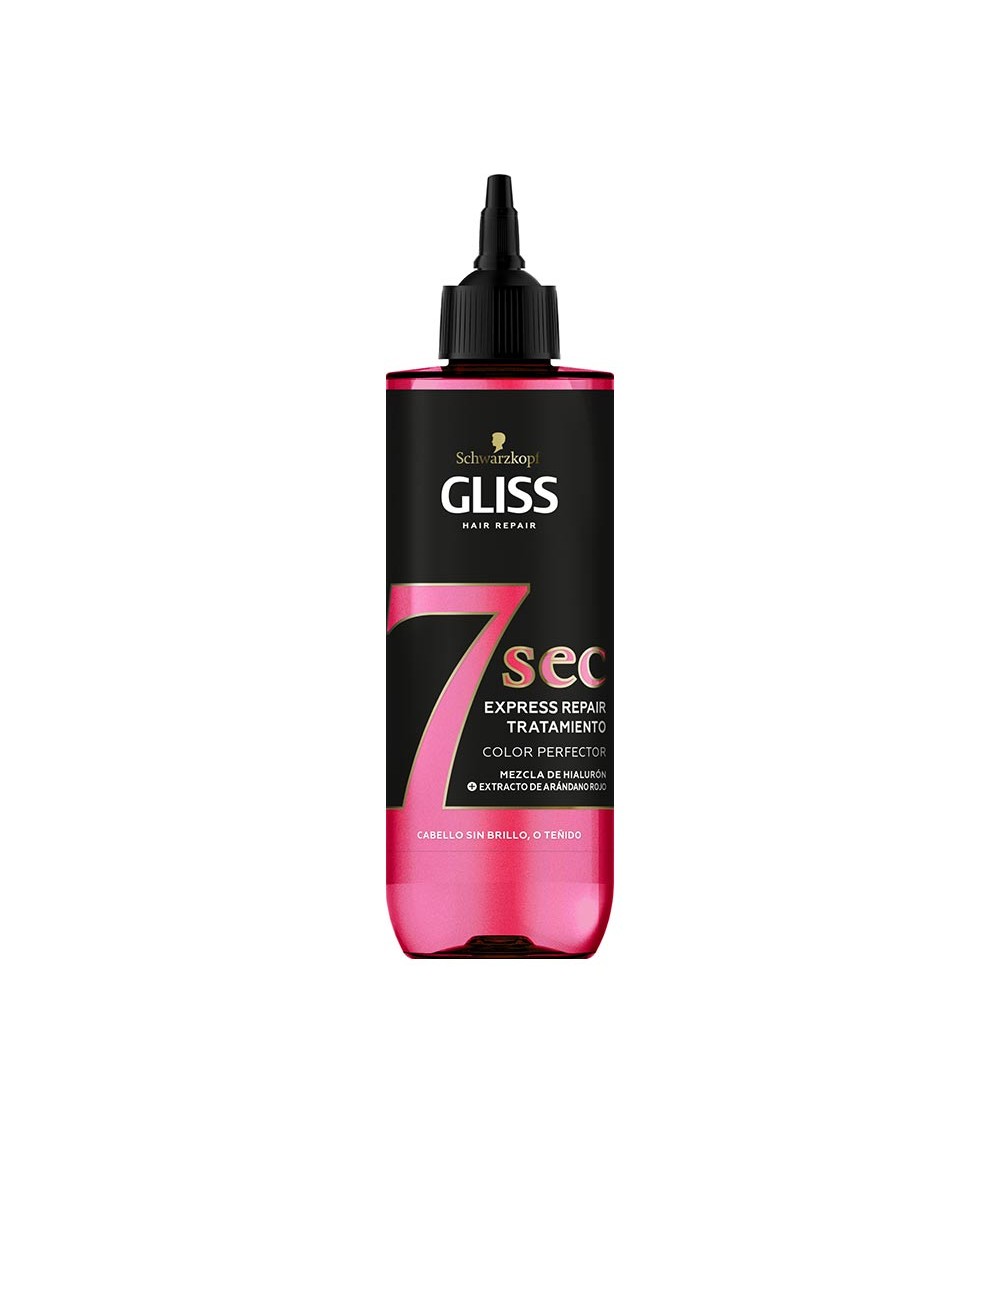 GLISS 7 SEC express repair treatment color perfector 200 ml